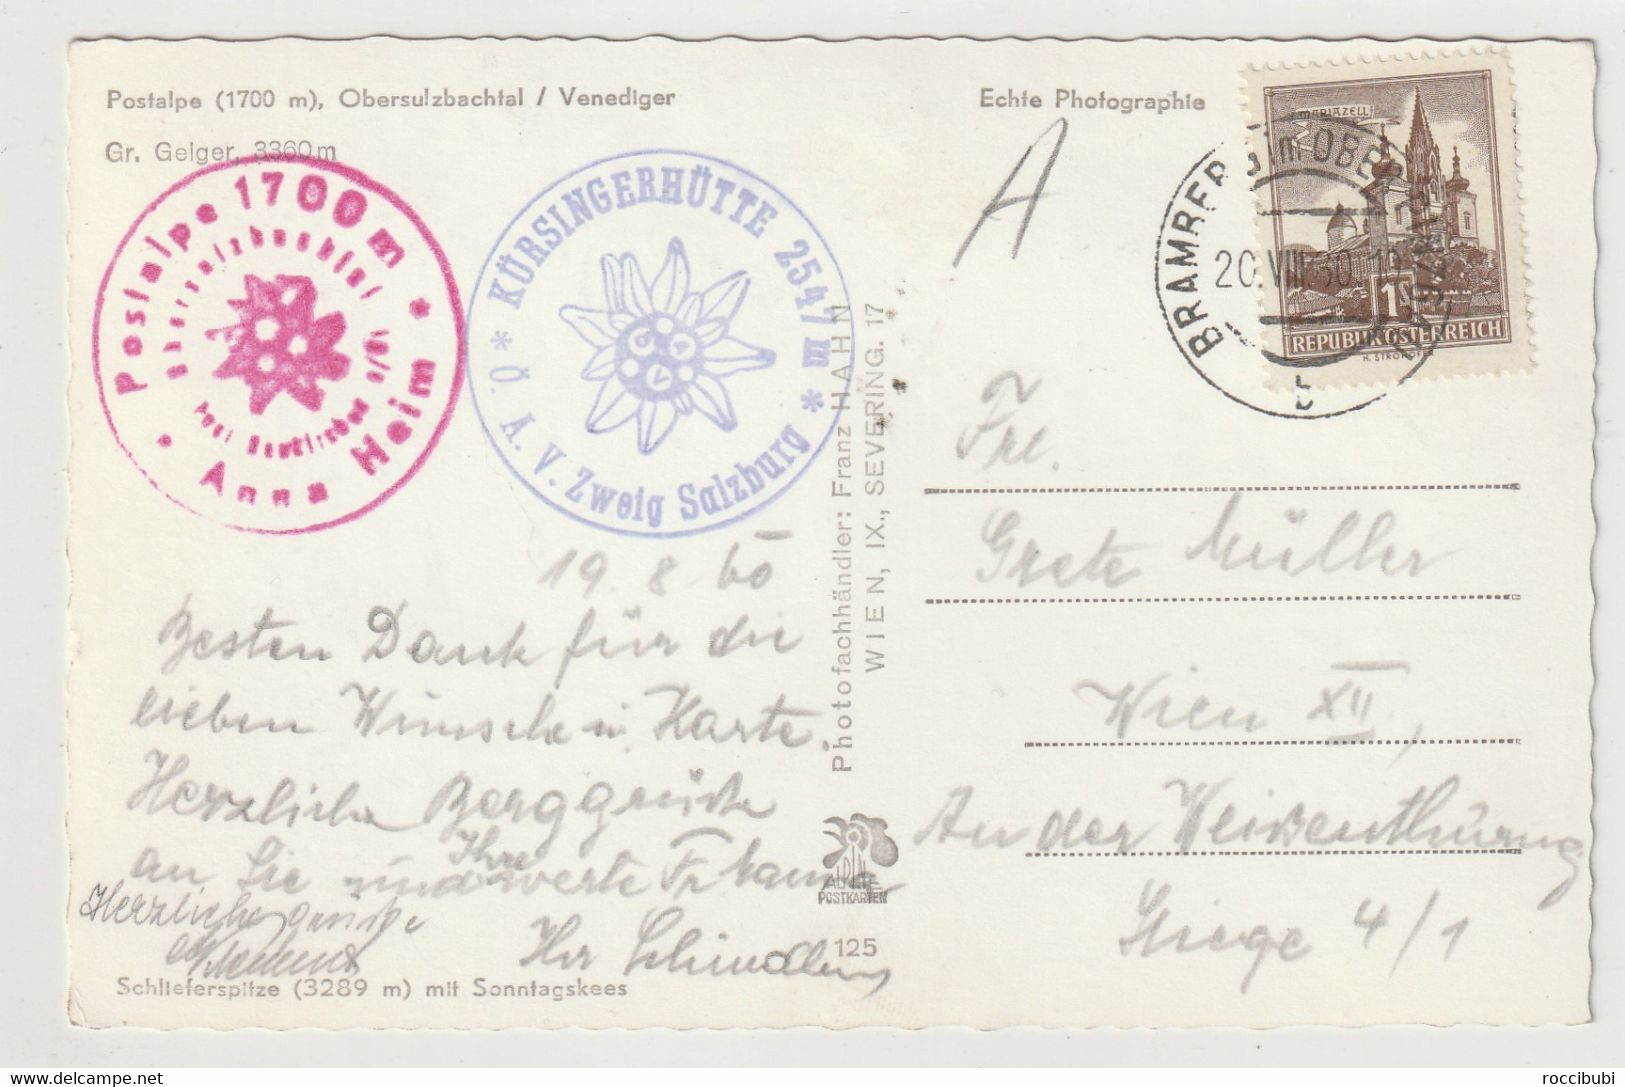 Postalpe, Obersulzbachtal, Venediger, Salzburg, Österreich - Neukirchen Am Grossvenediger